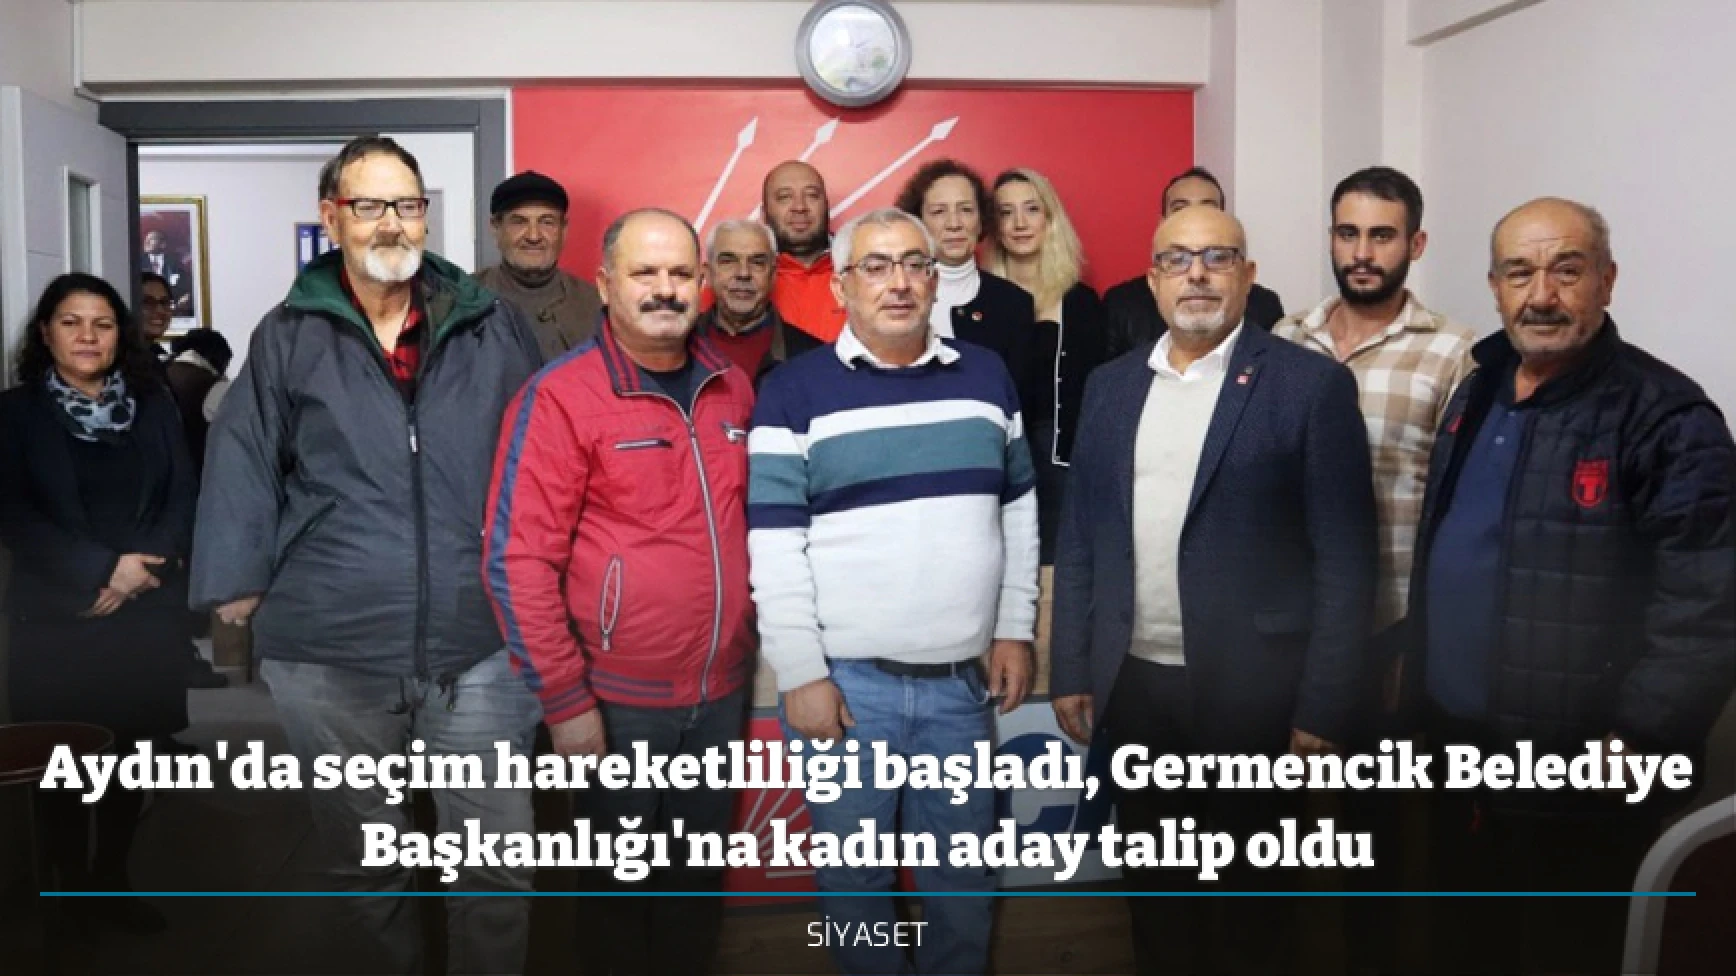 Aydın'da seçim hareketliliği başladı, Germencik Belediye Başkanlığı'na kadın aday talip oldu